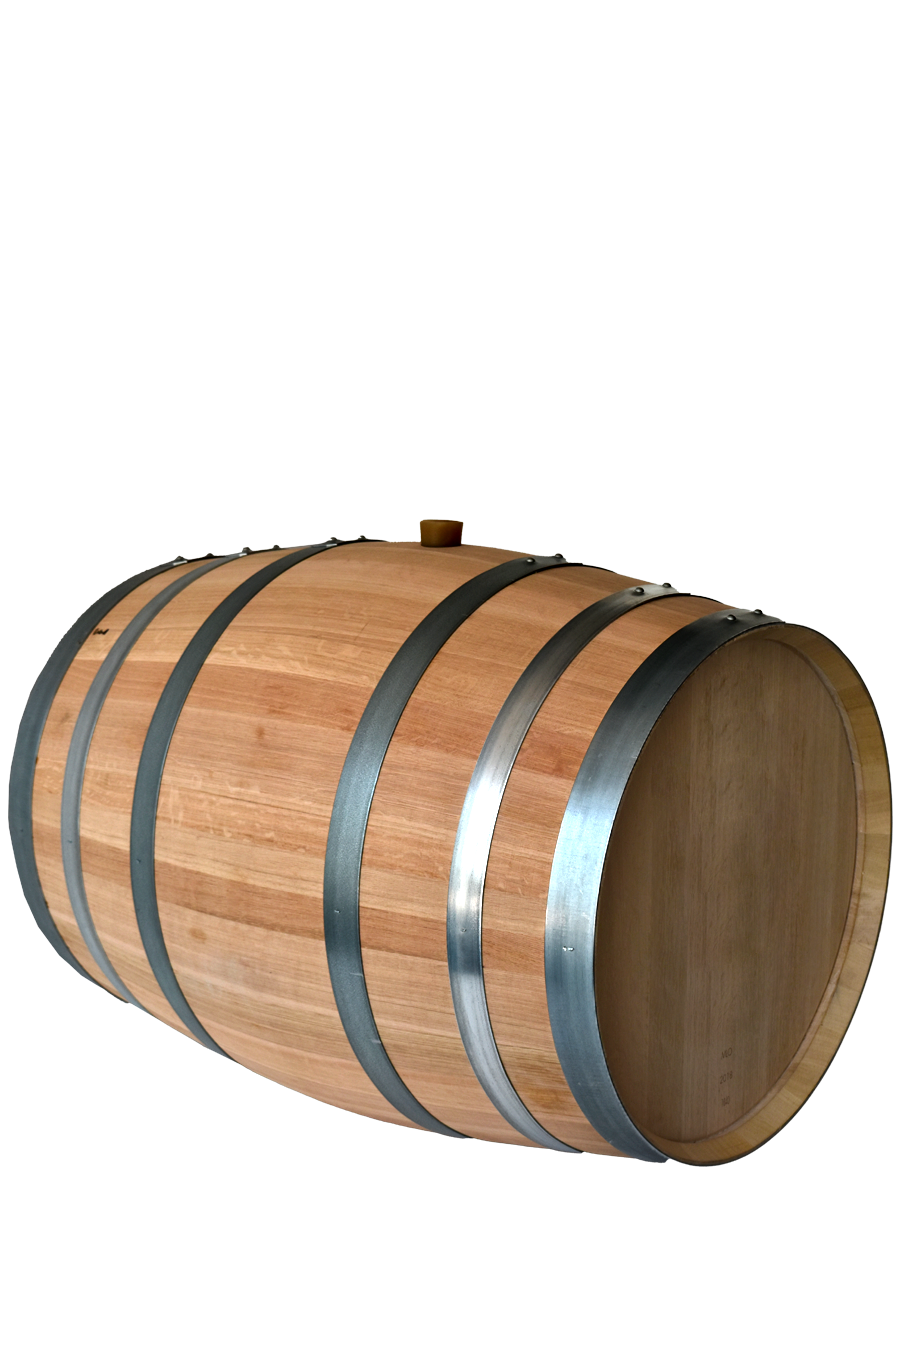 <b>Used Oak barrels<br></b>